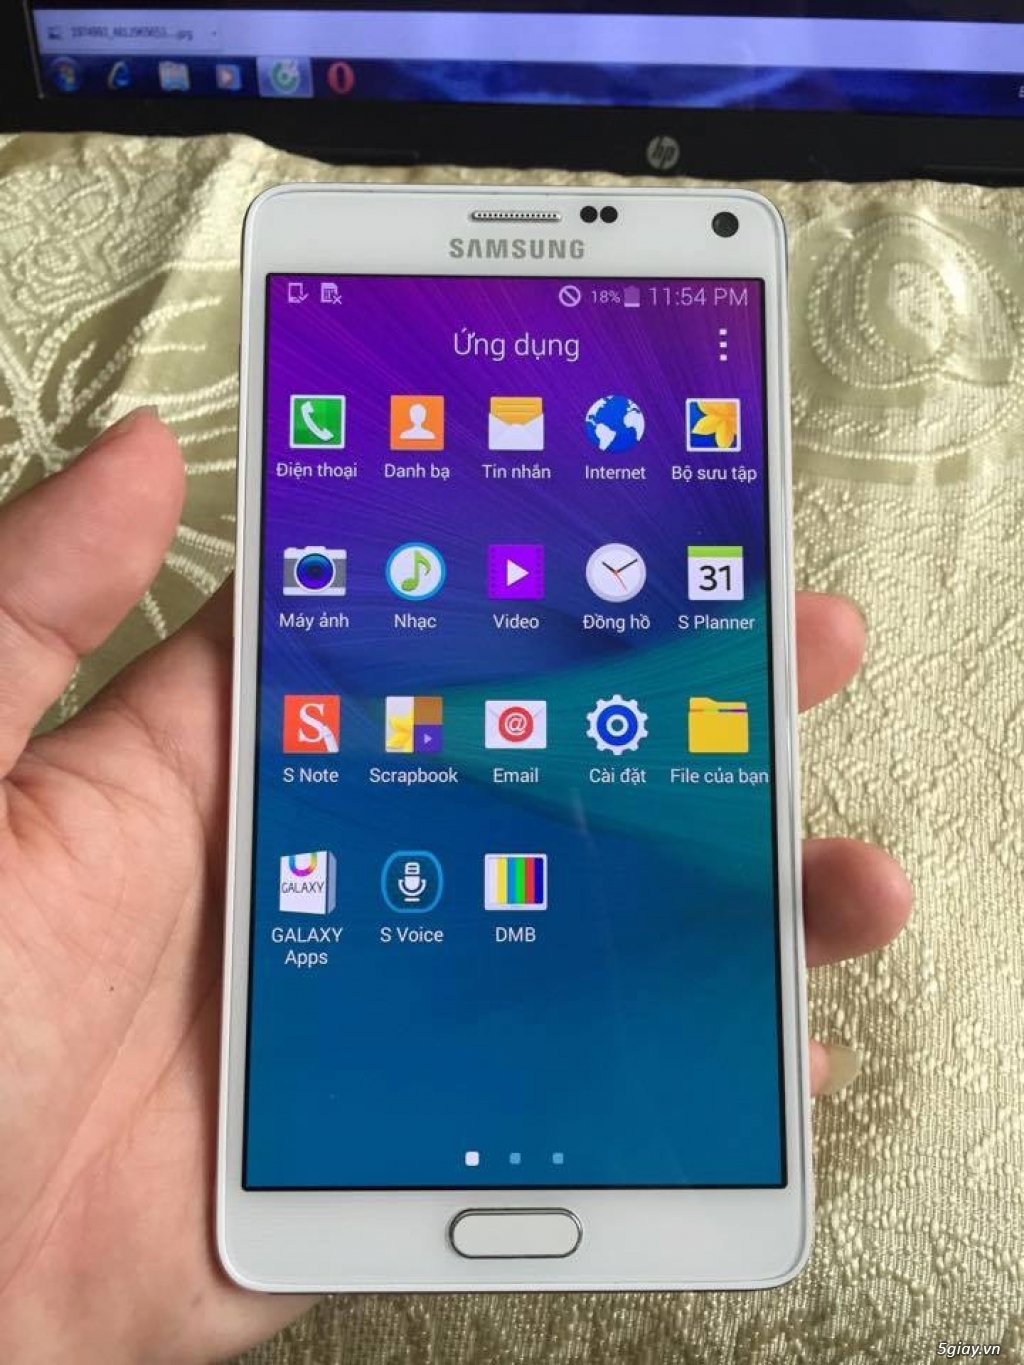 Samsung Galaxy Note 4 N916 likenew trắng, LG G4 new lưng da giá tốt - 1